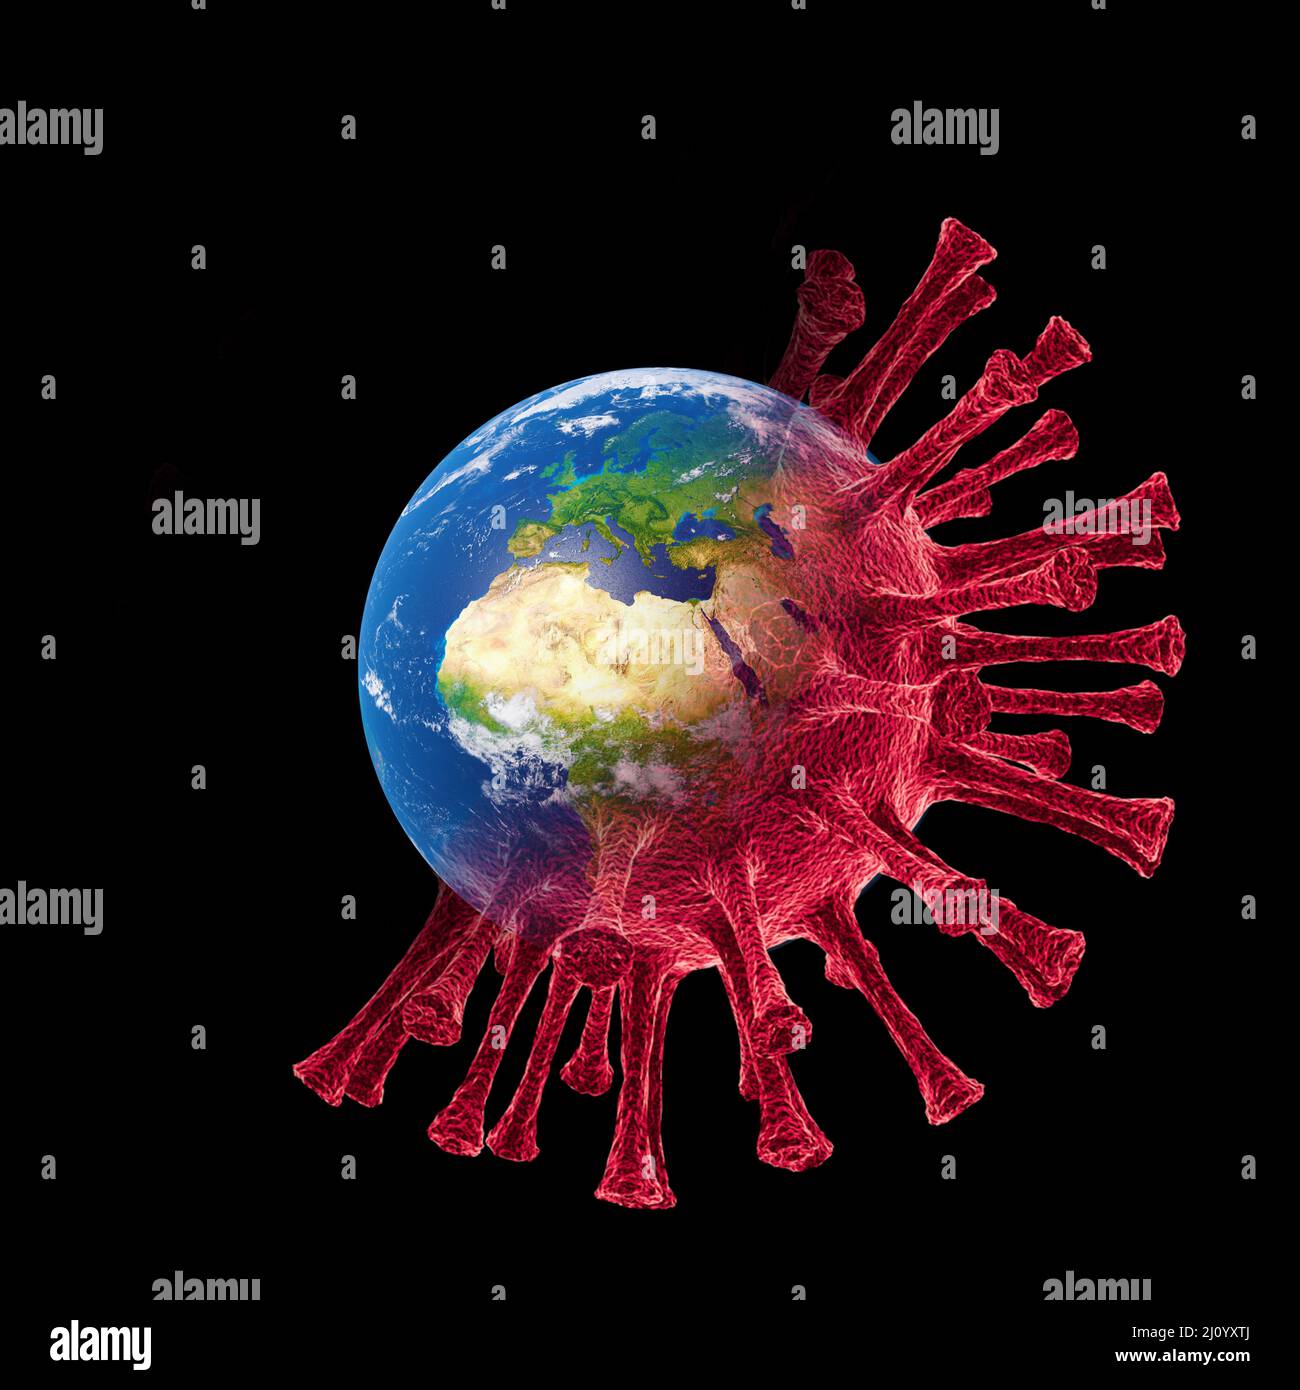 Corona virus crisis around the world. 3d illustration Stock Photo